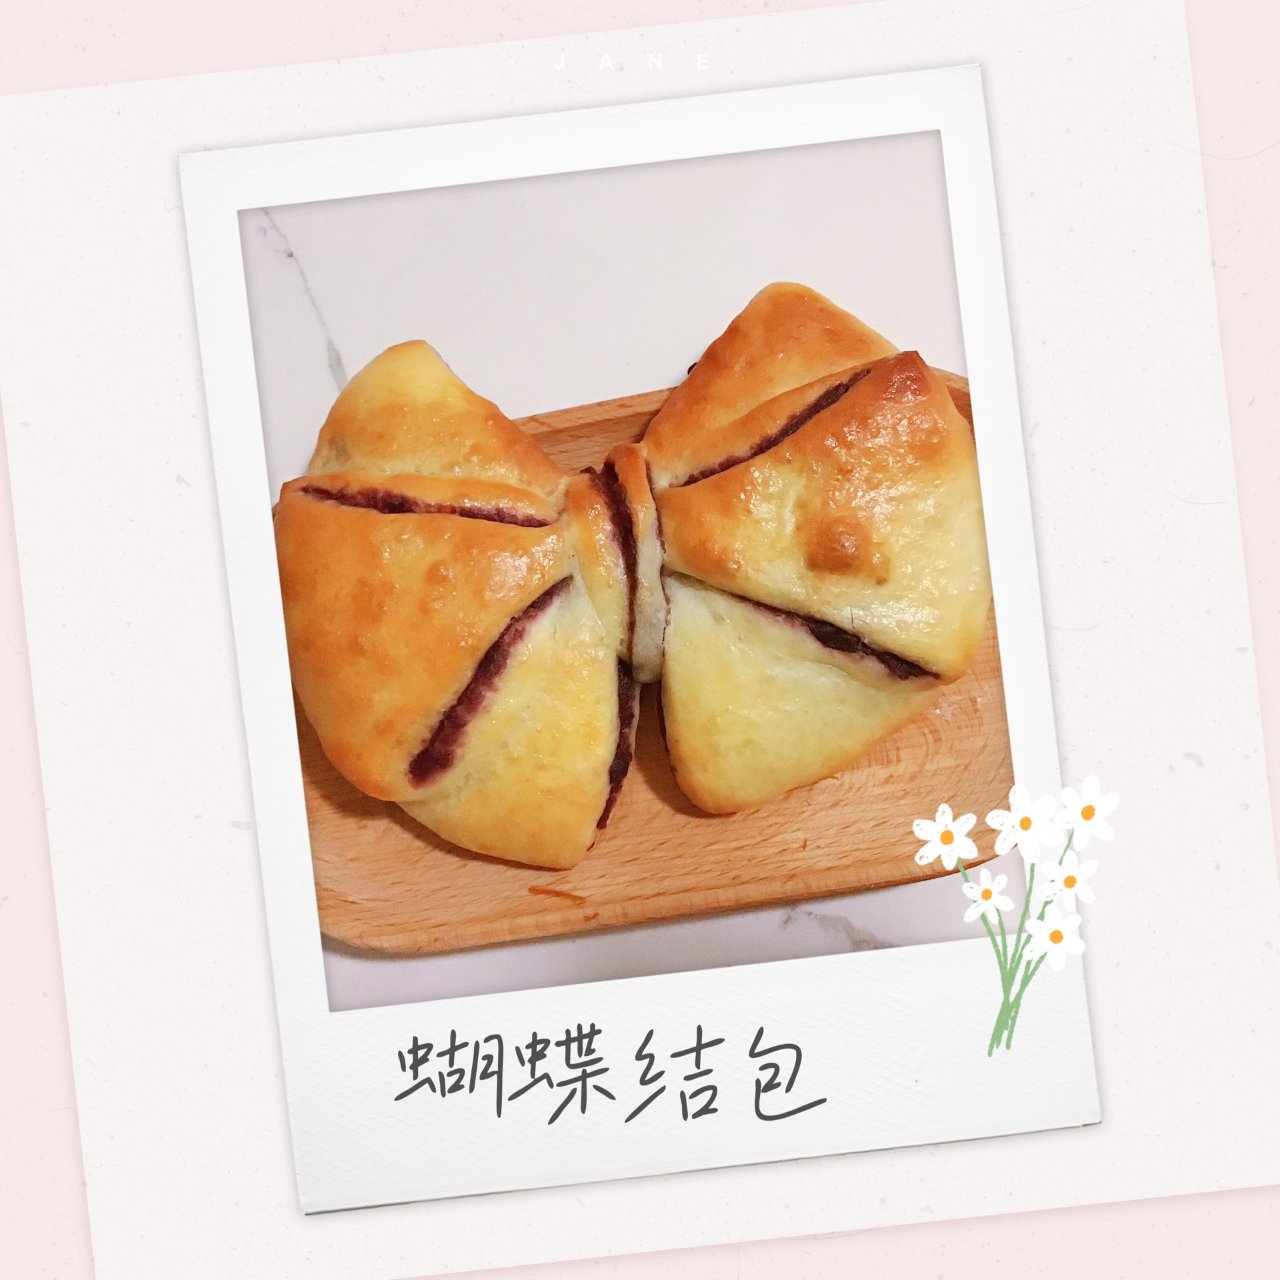 【少女心-4】🎀紫薯包...